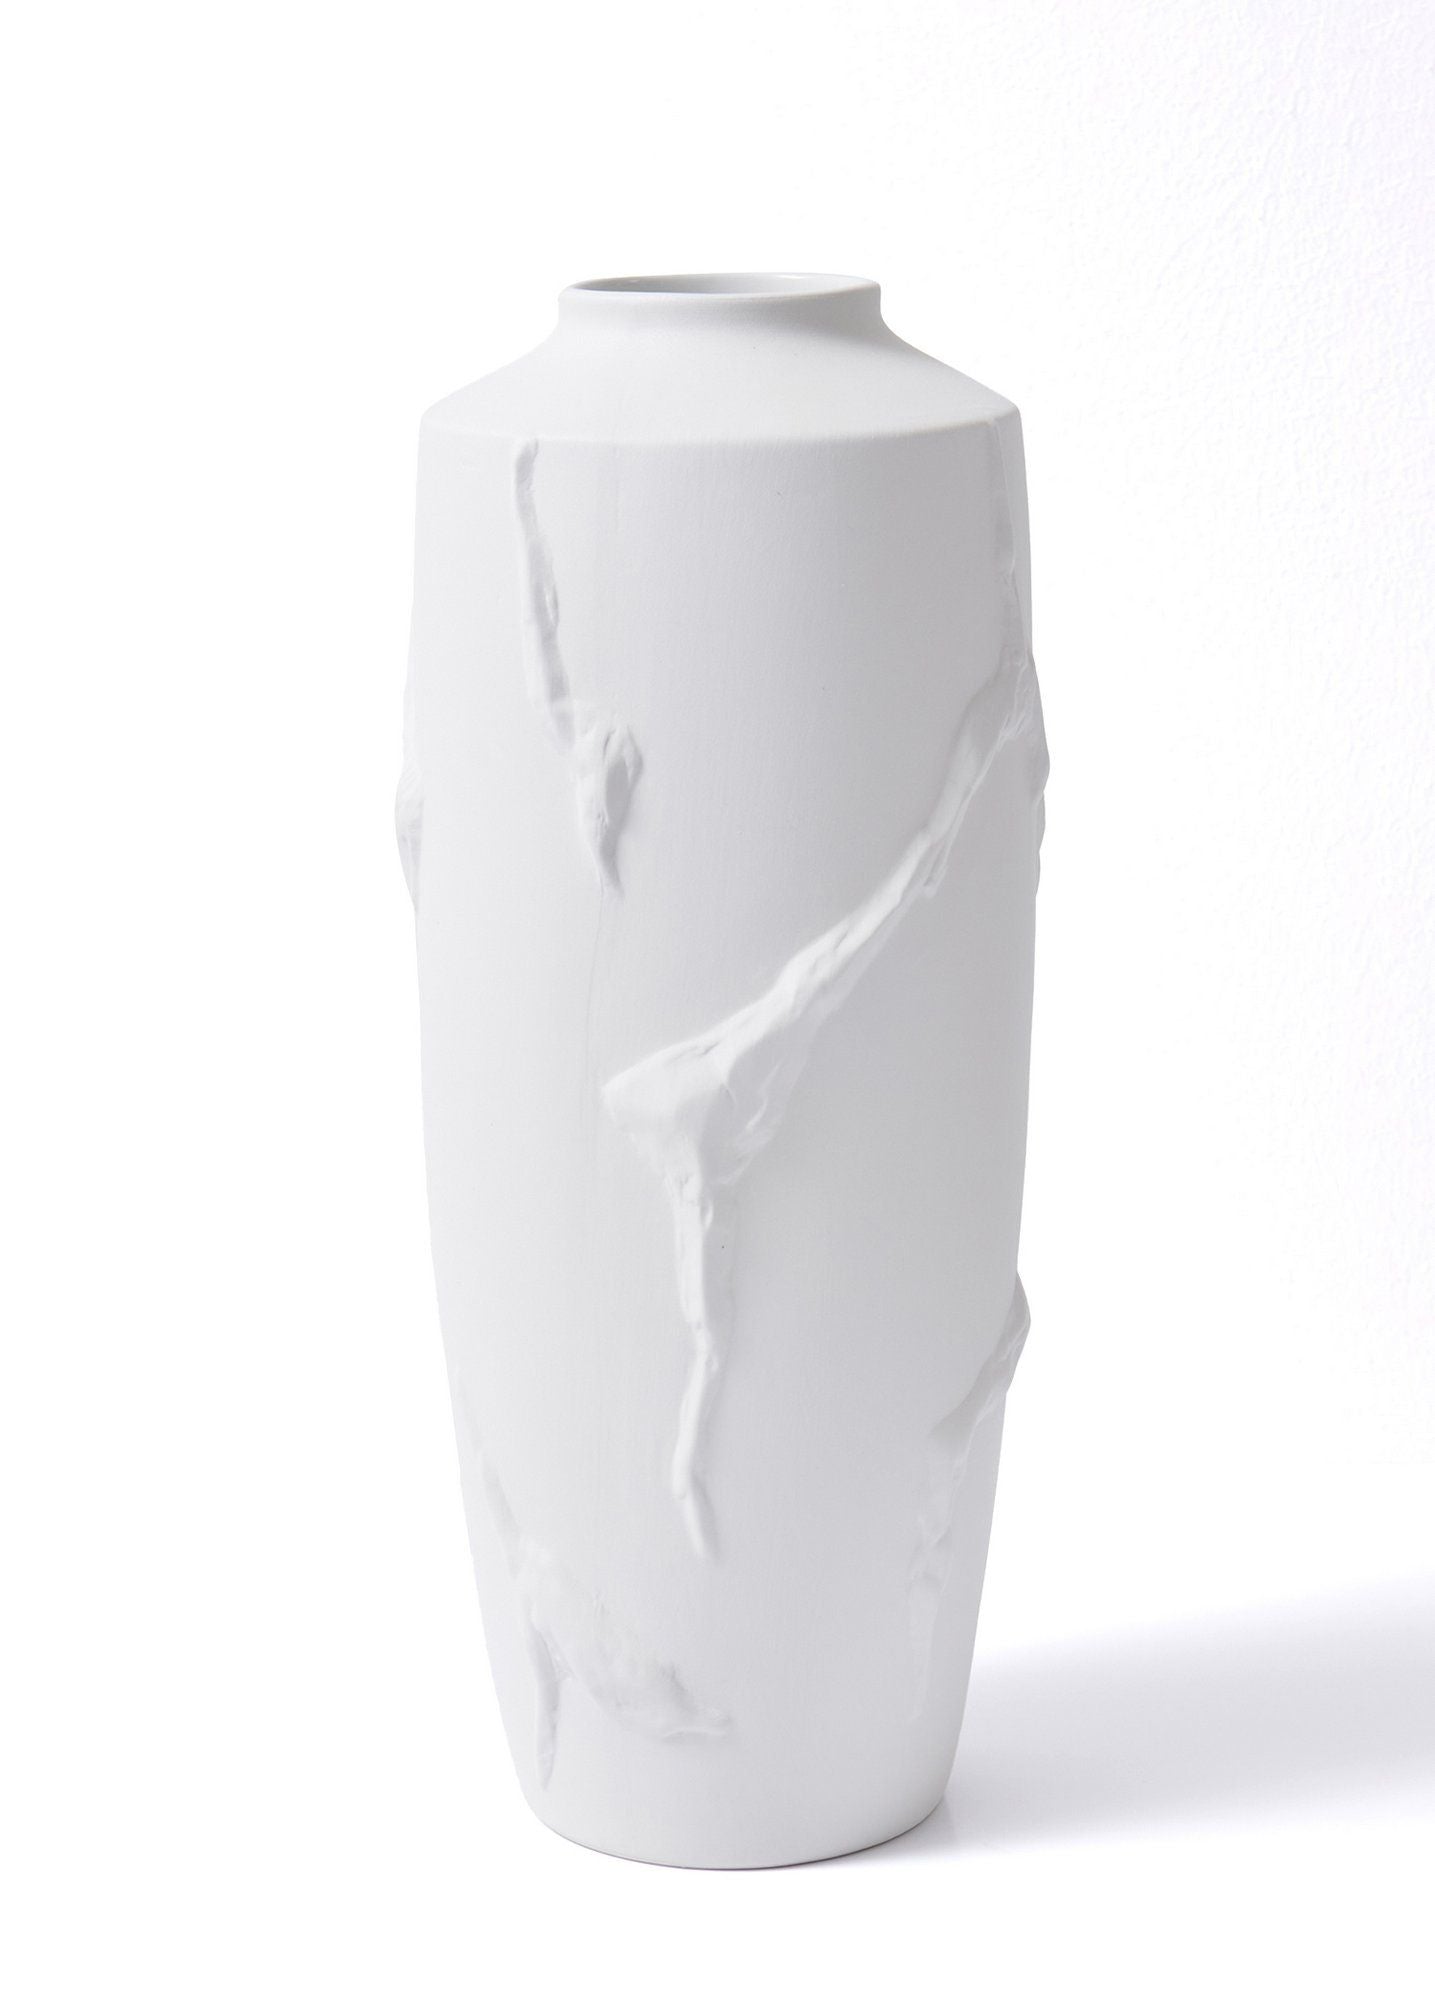 LCA0015 - Vase